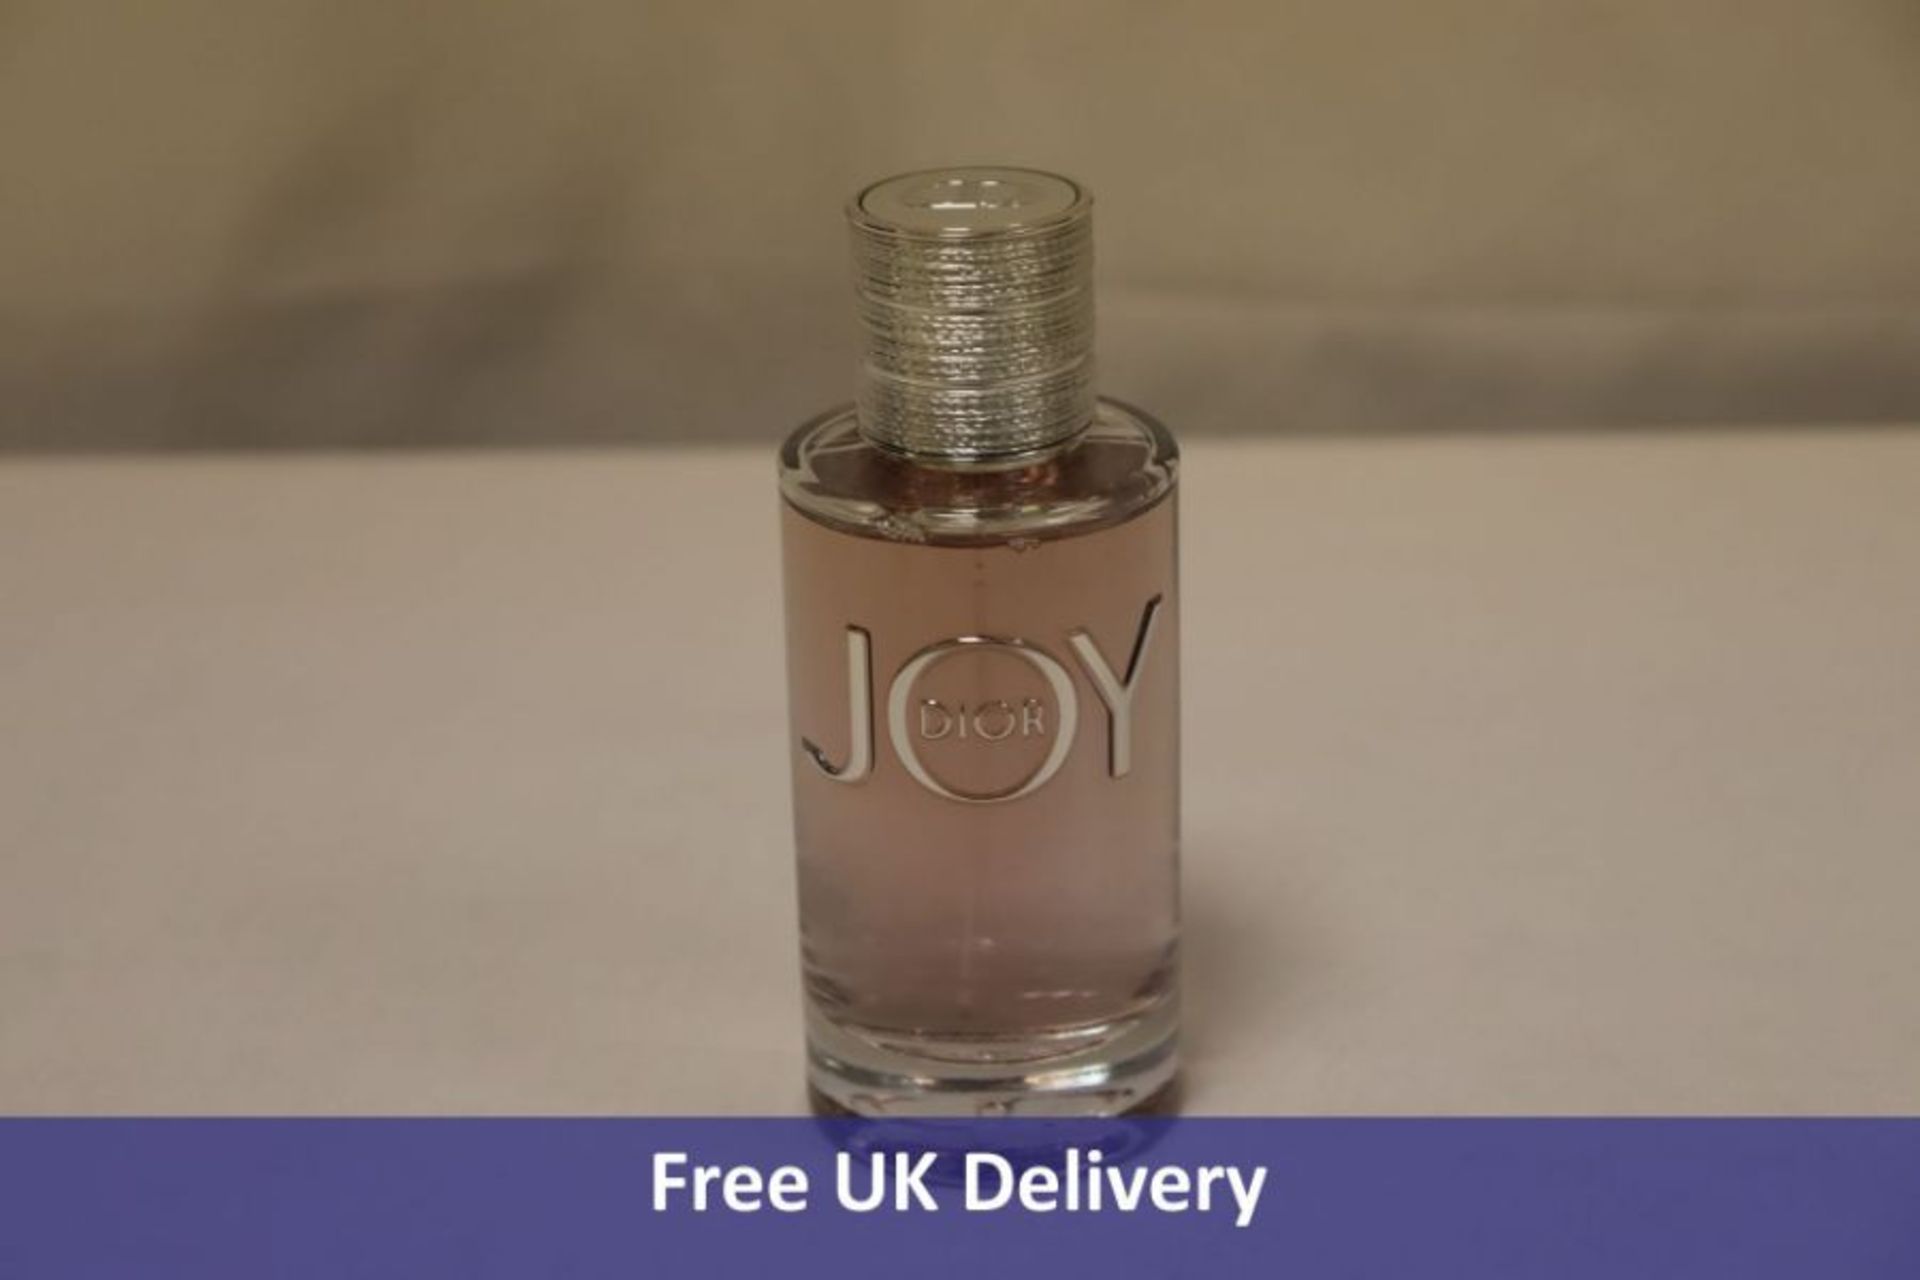 Dior Joy Eau De Parfume 90ml, Tester/Non Retail Bottle